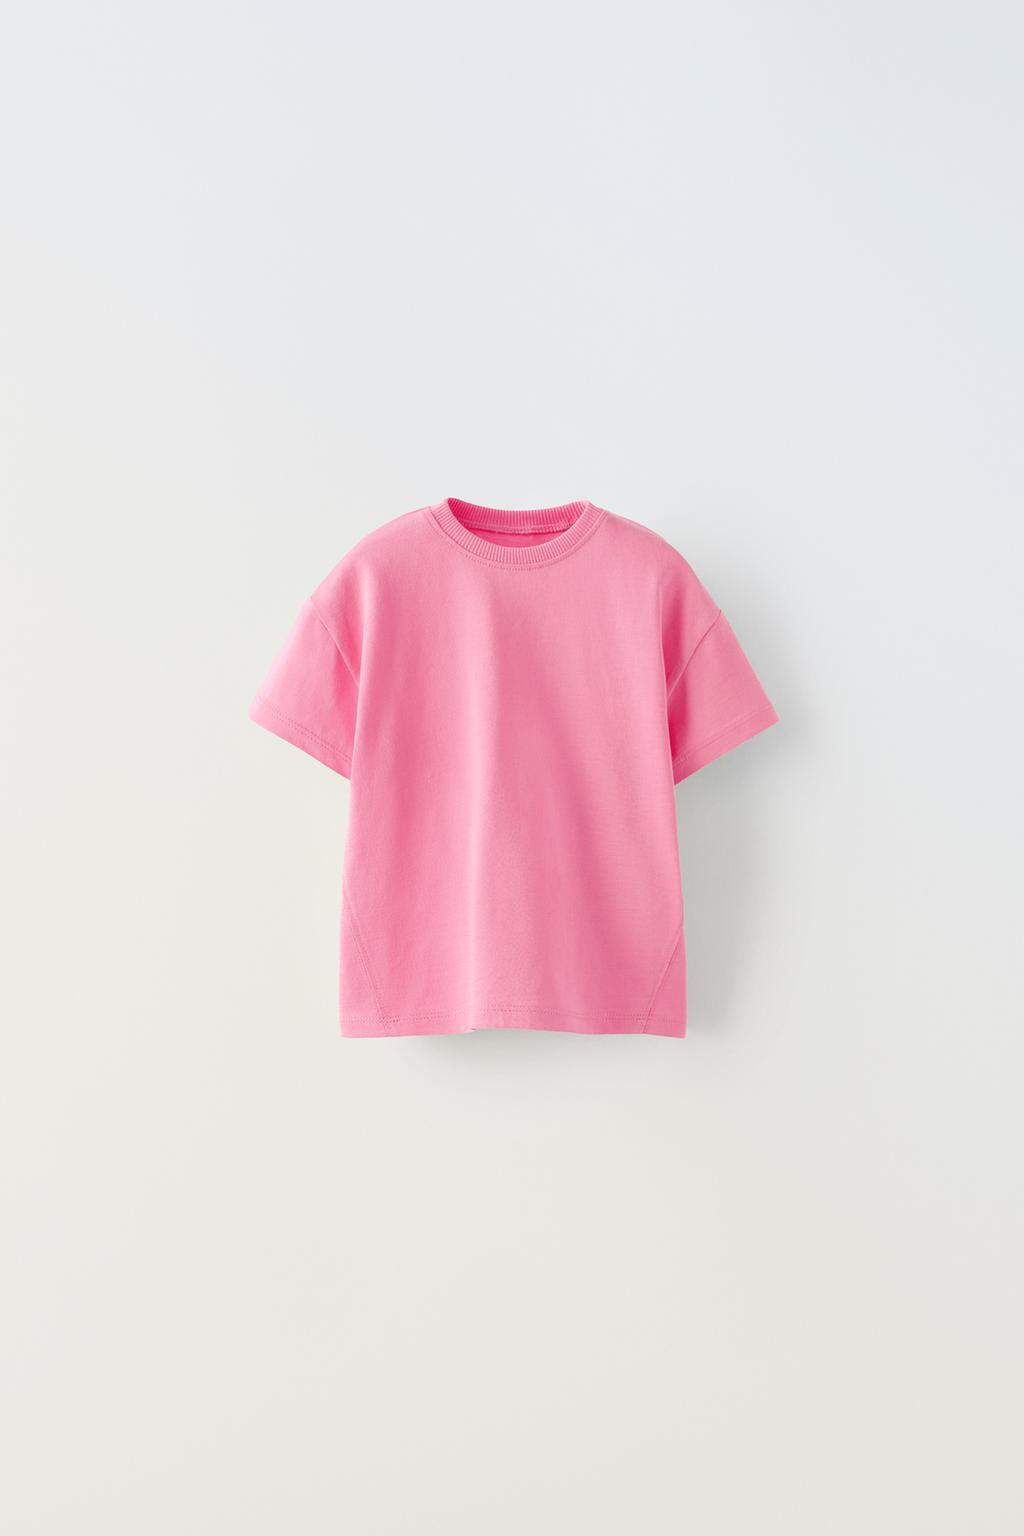 Базовая футболка ZARA, розовый футболка с круглым вырезом и короткими рукавами l оранжевый